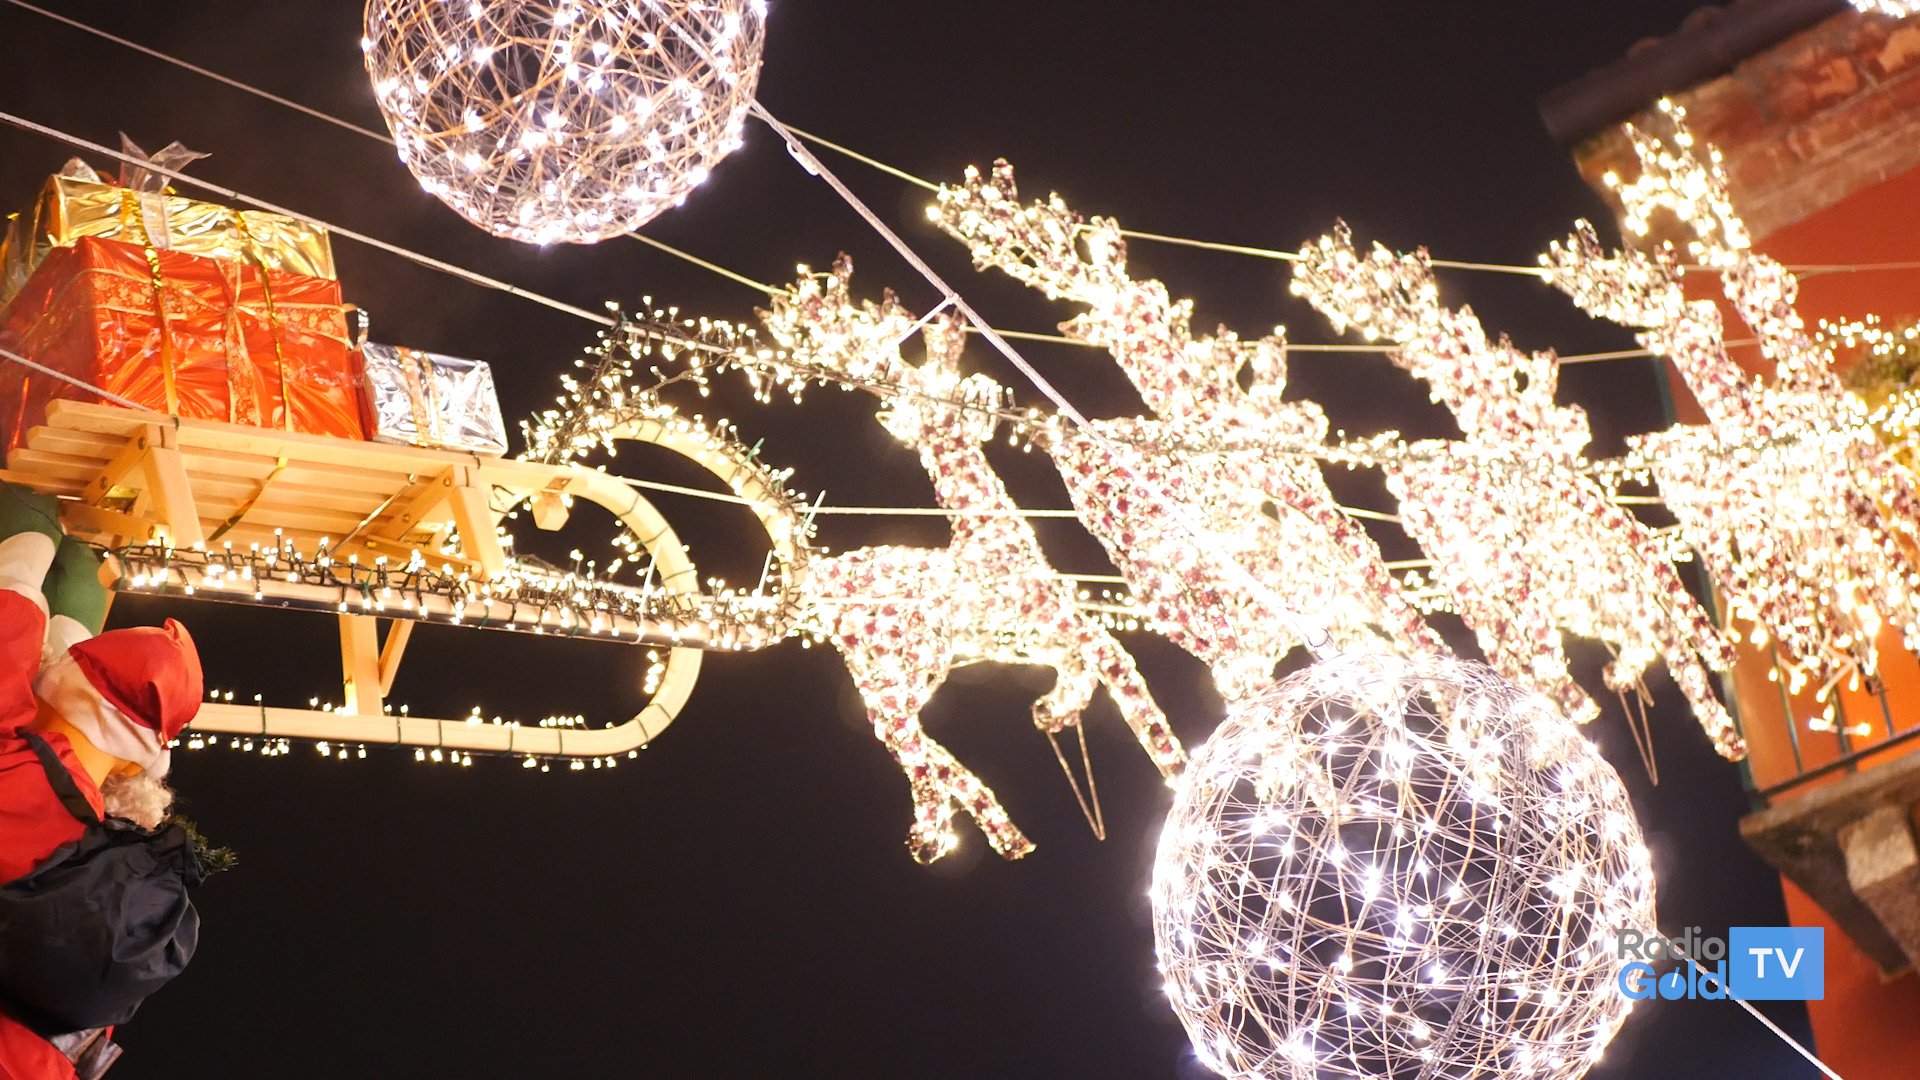 Il cortile del B&B Arcobaleno di Alessandria illumina il Natale in via Verona